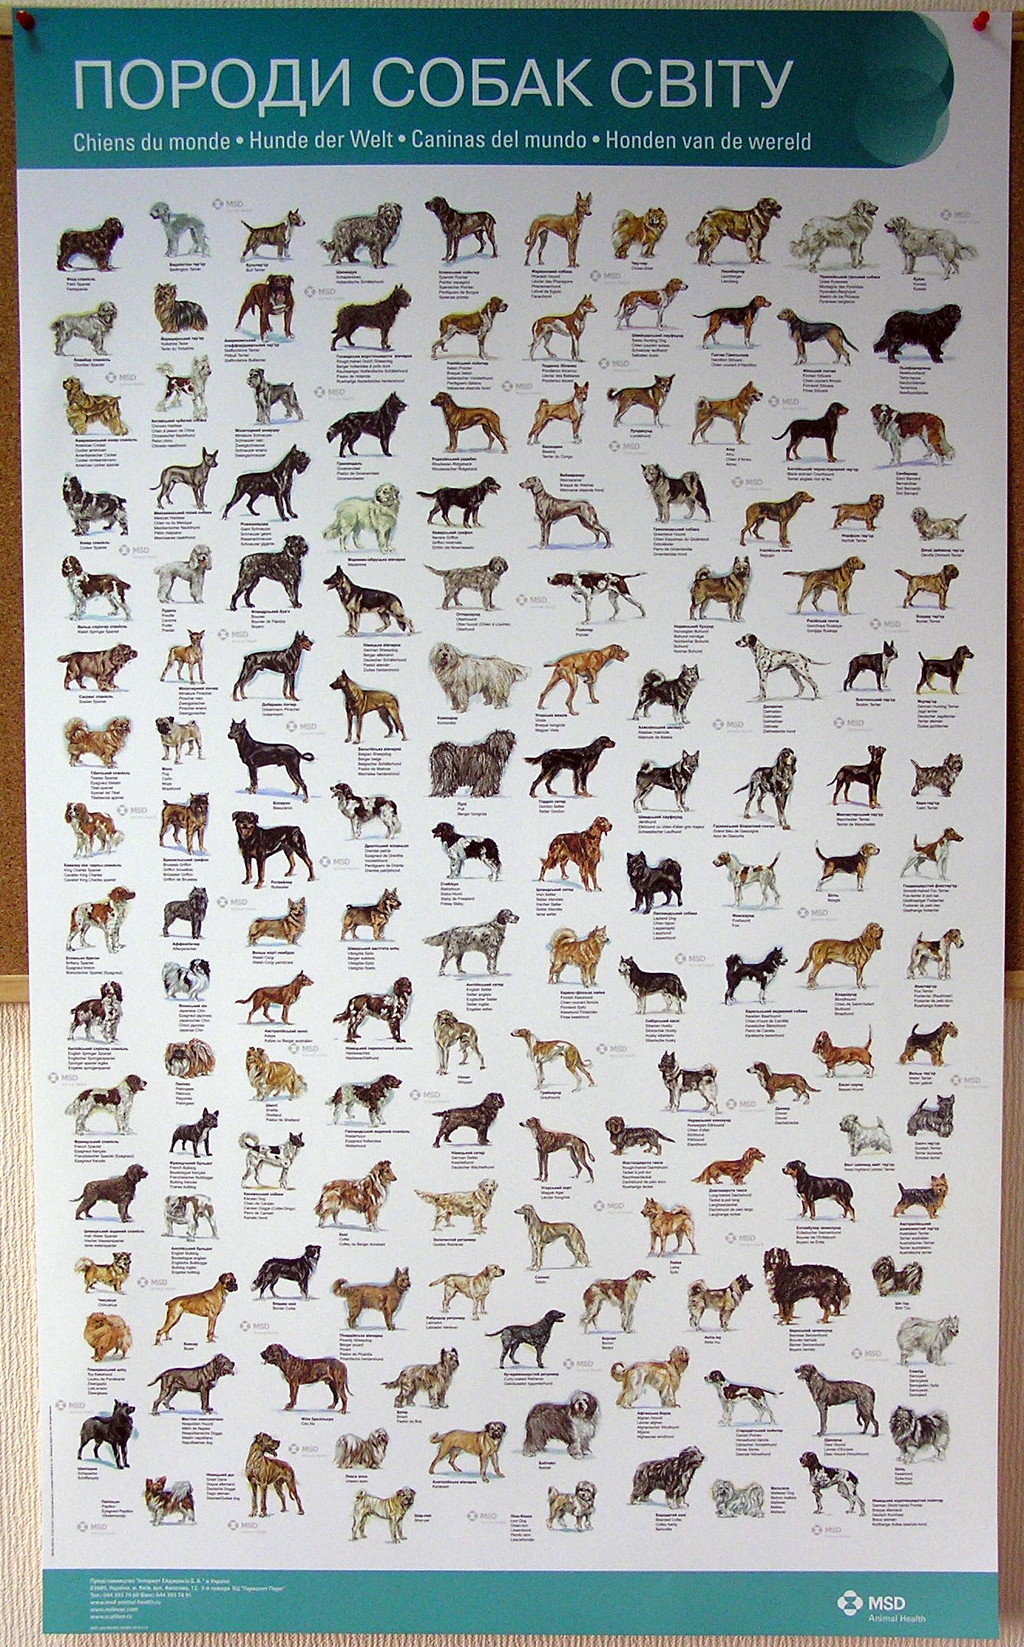 Печать постеров «Породи собак світу». Полиграфия типографии Макрос, изготовление постеров, спецификация 980998-1